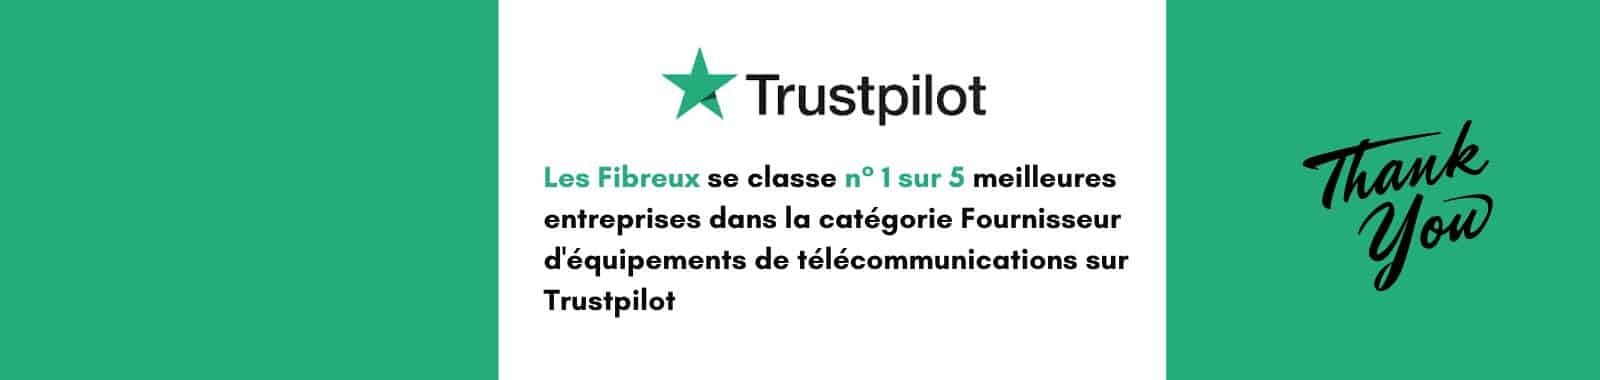 Trustpillot 1